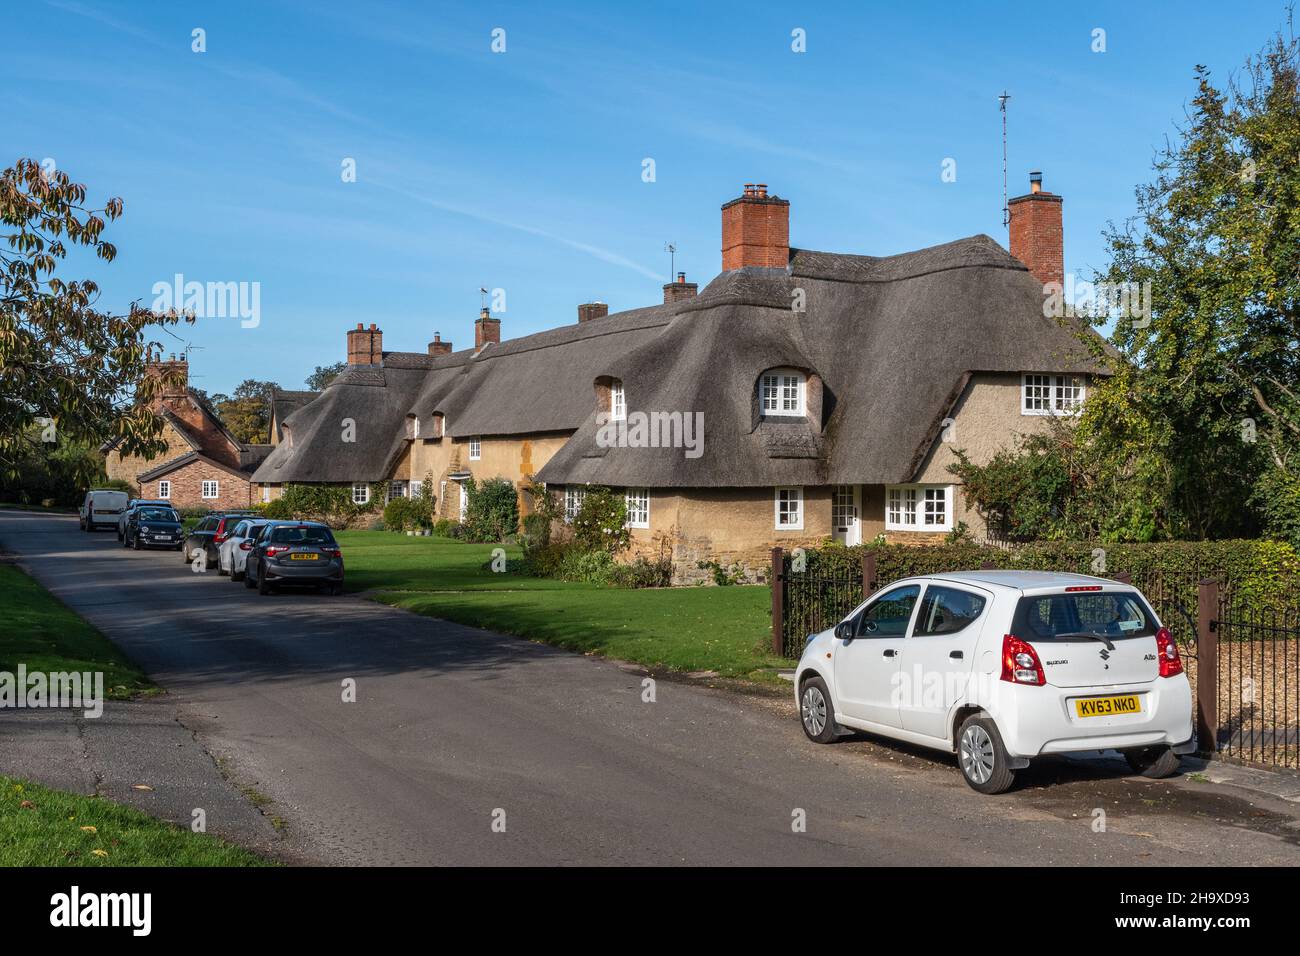 Scena stradale, con case di paglia, nel grazioso villaggio di Ashby St Ledgers, Northamptonshire, Regno Unito Foto Stock